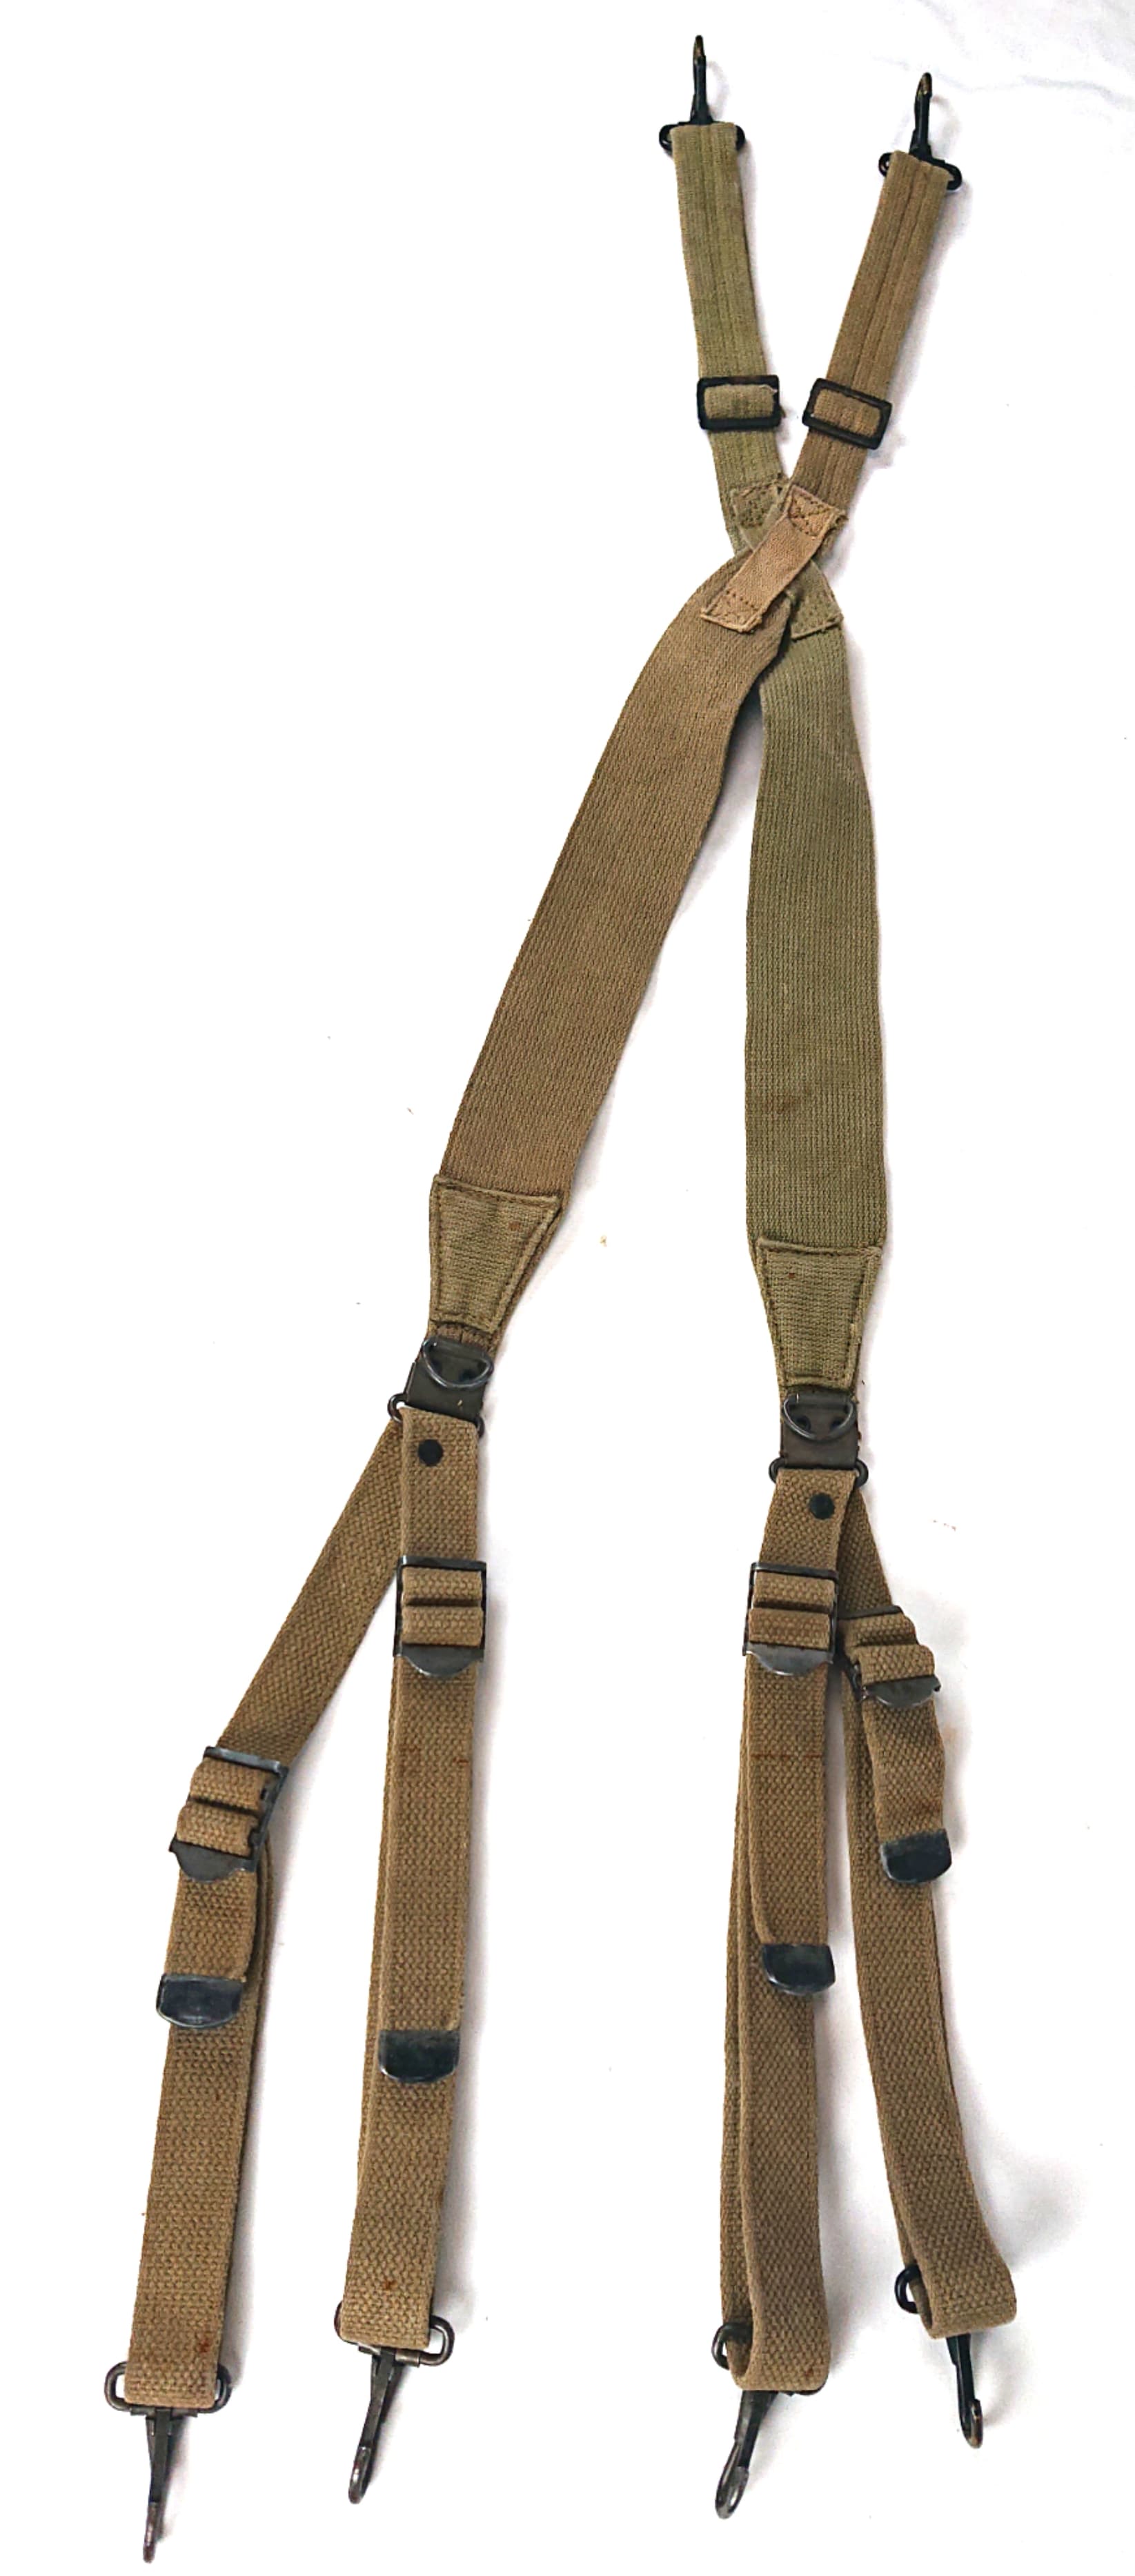 militaria : Brelage US m36 bicolore / Two-tone US m36 suspender